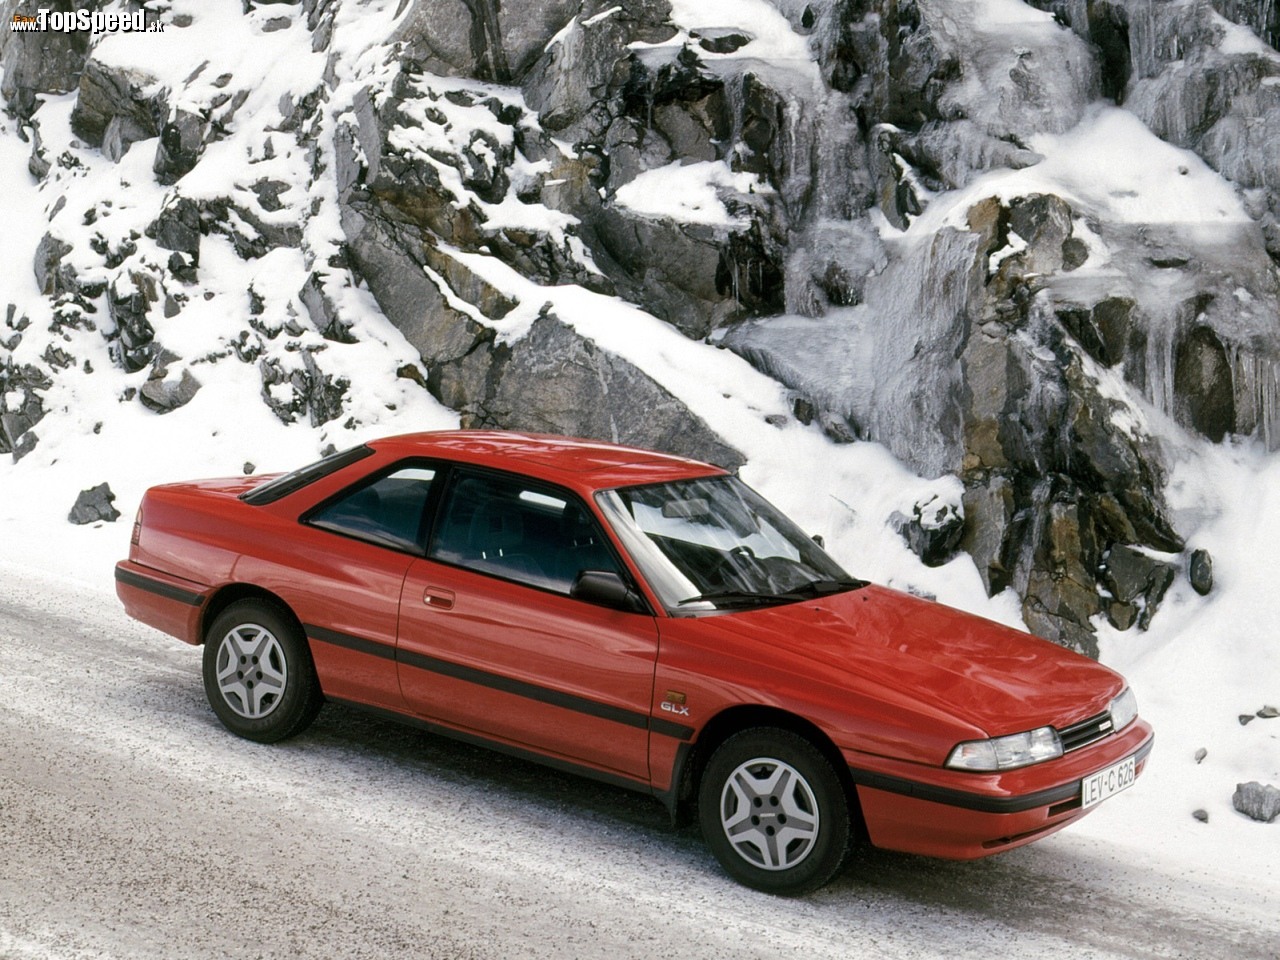 Takto vyzerá posledné kupé na báze šestkovej Mazdy. Mazda 626 coupé z konca 80. rokov.